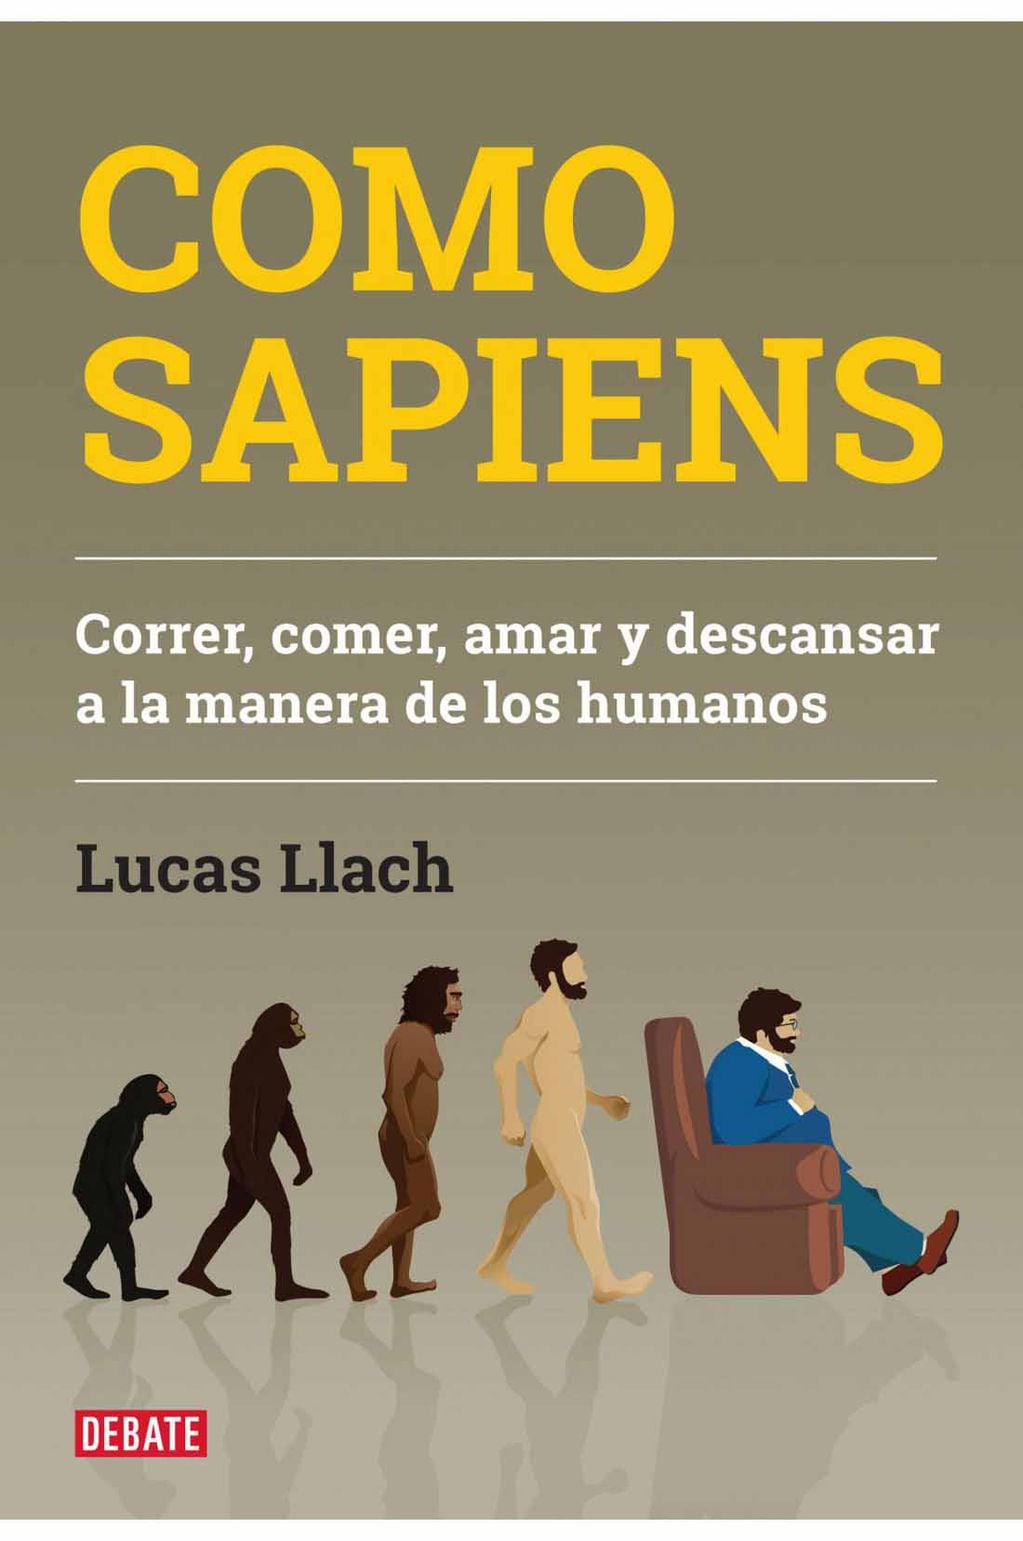 A prudente distancia de la corrección política y con una dosis importante de humor, el ensayo de Lucas Llach repasa los hallazgos de los últimos años sobre la evolución humana e invita a pensar cómo queremos vivir de ahora en adelante.